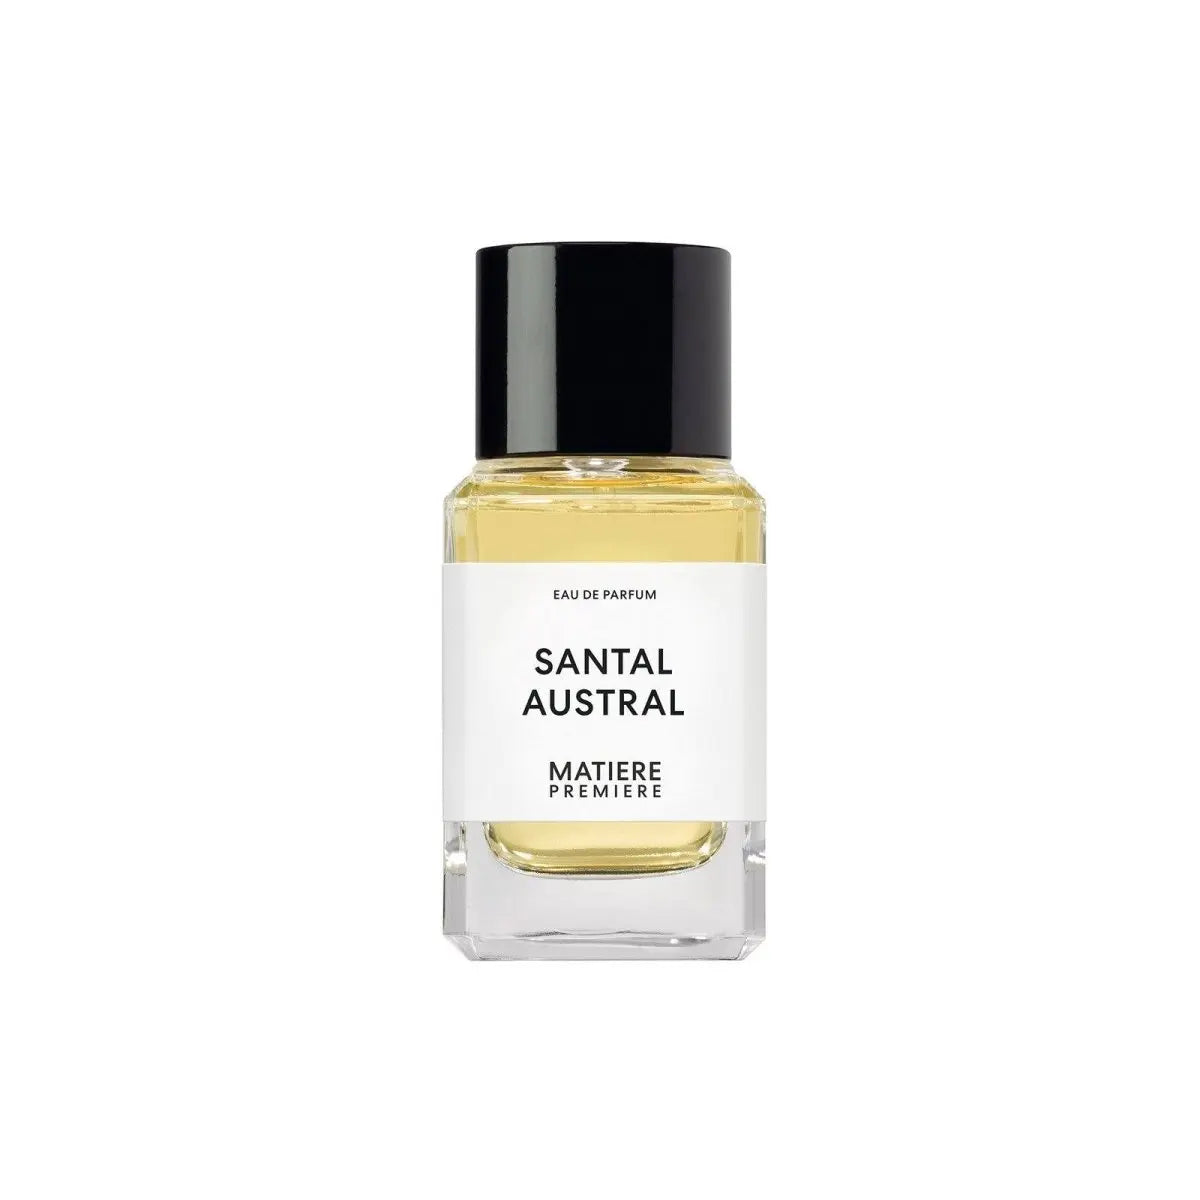 Matiere estreno Santal Austral eau de parfum - 50 ml